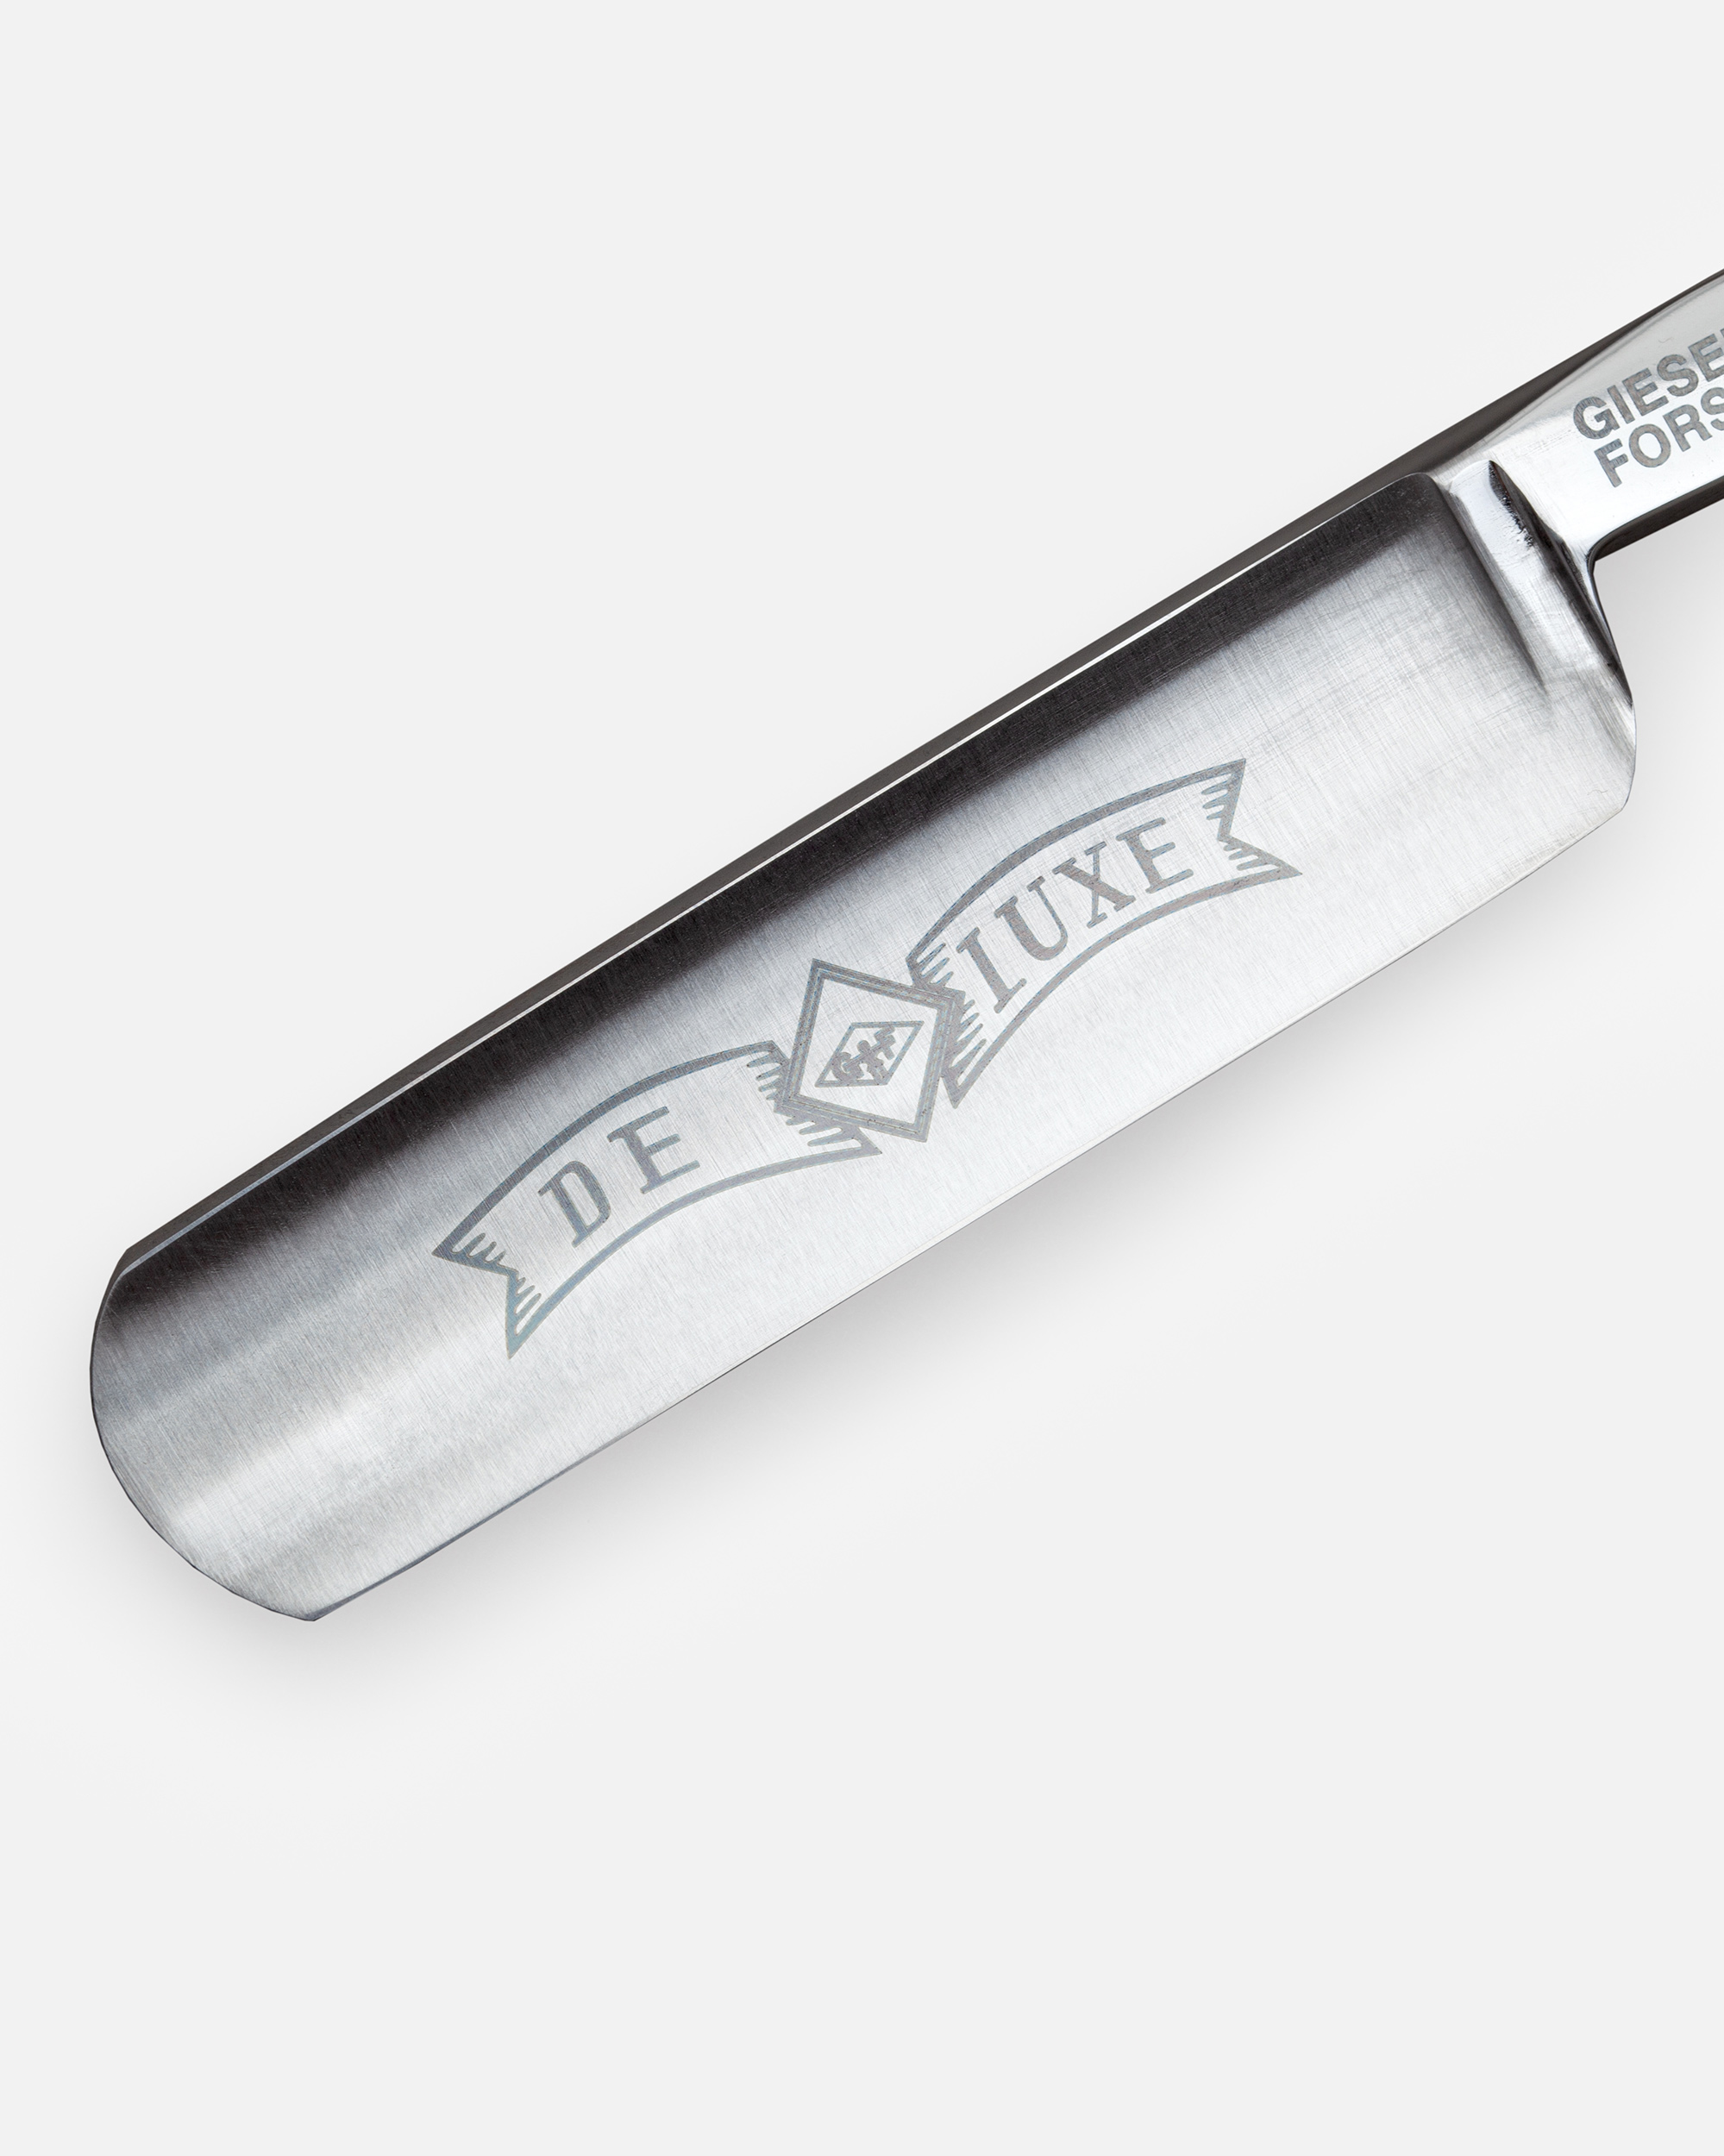 G&F Timor® Deluxe Rasiermesser 5/8 cs mit Rosenholzschale